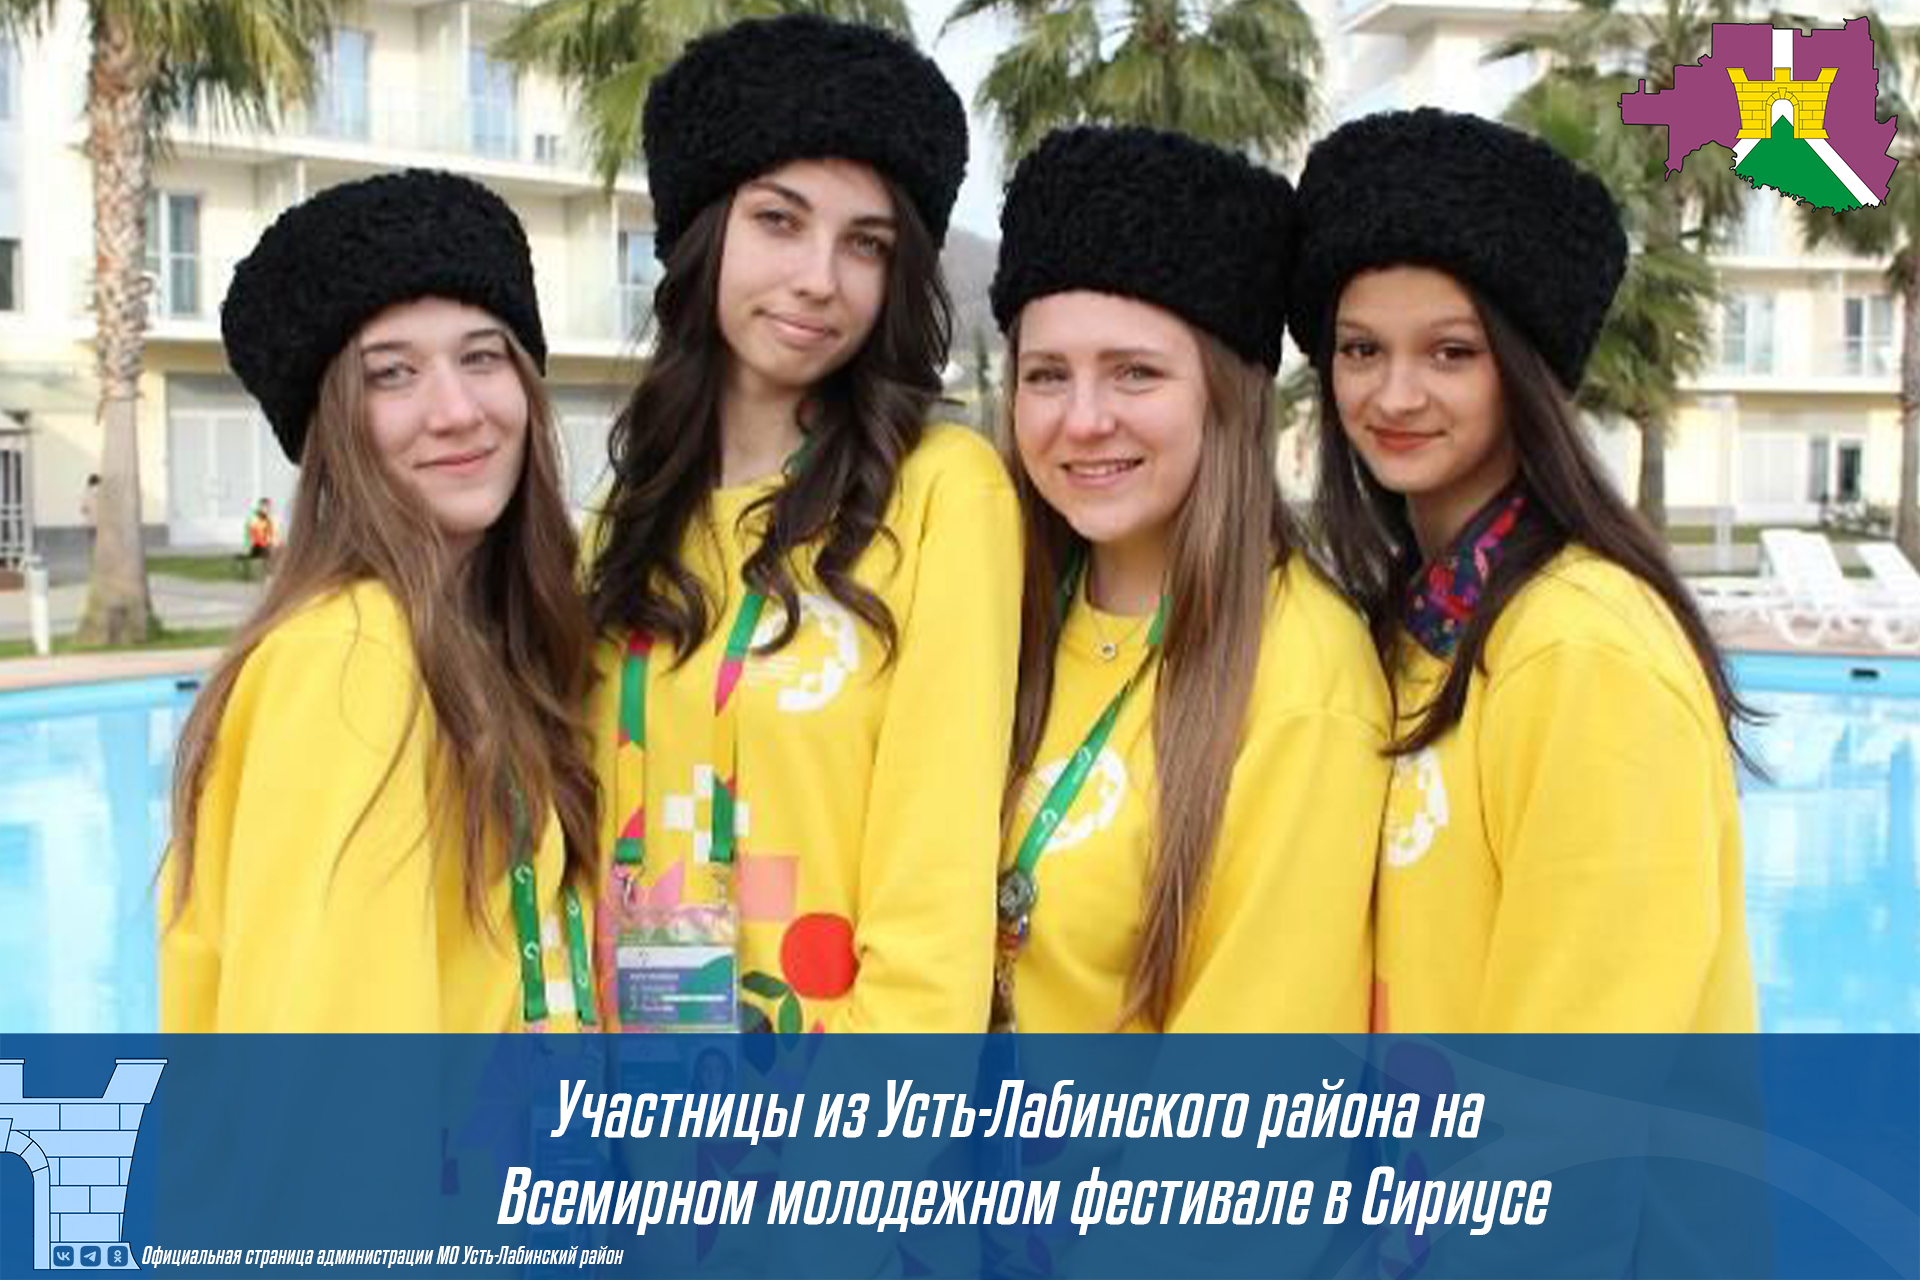 Участники из  Усть-Лабинского района на всемирном молодежном фестивале в Сириусе!